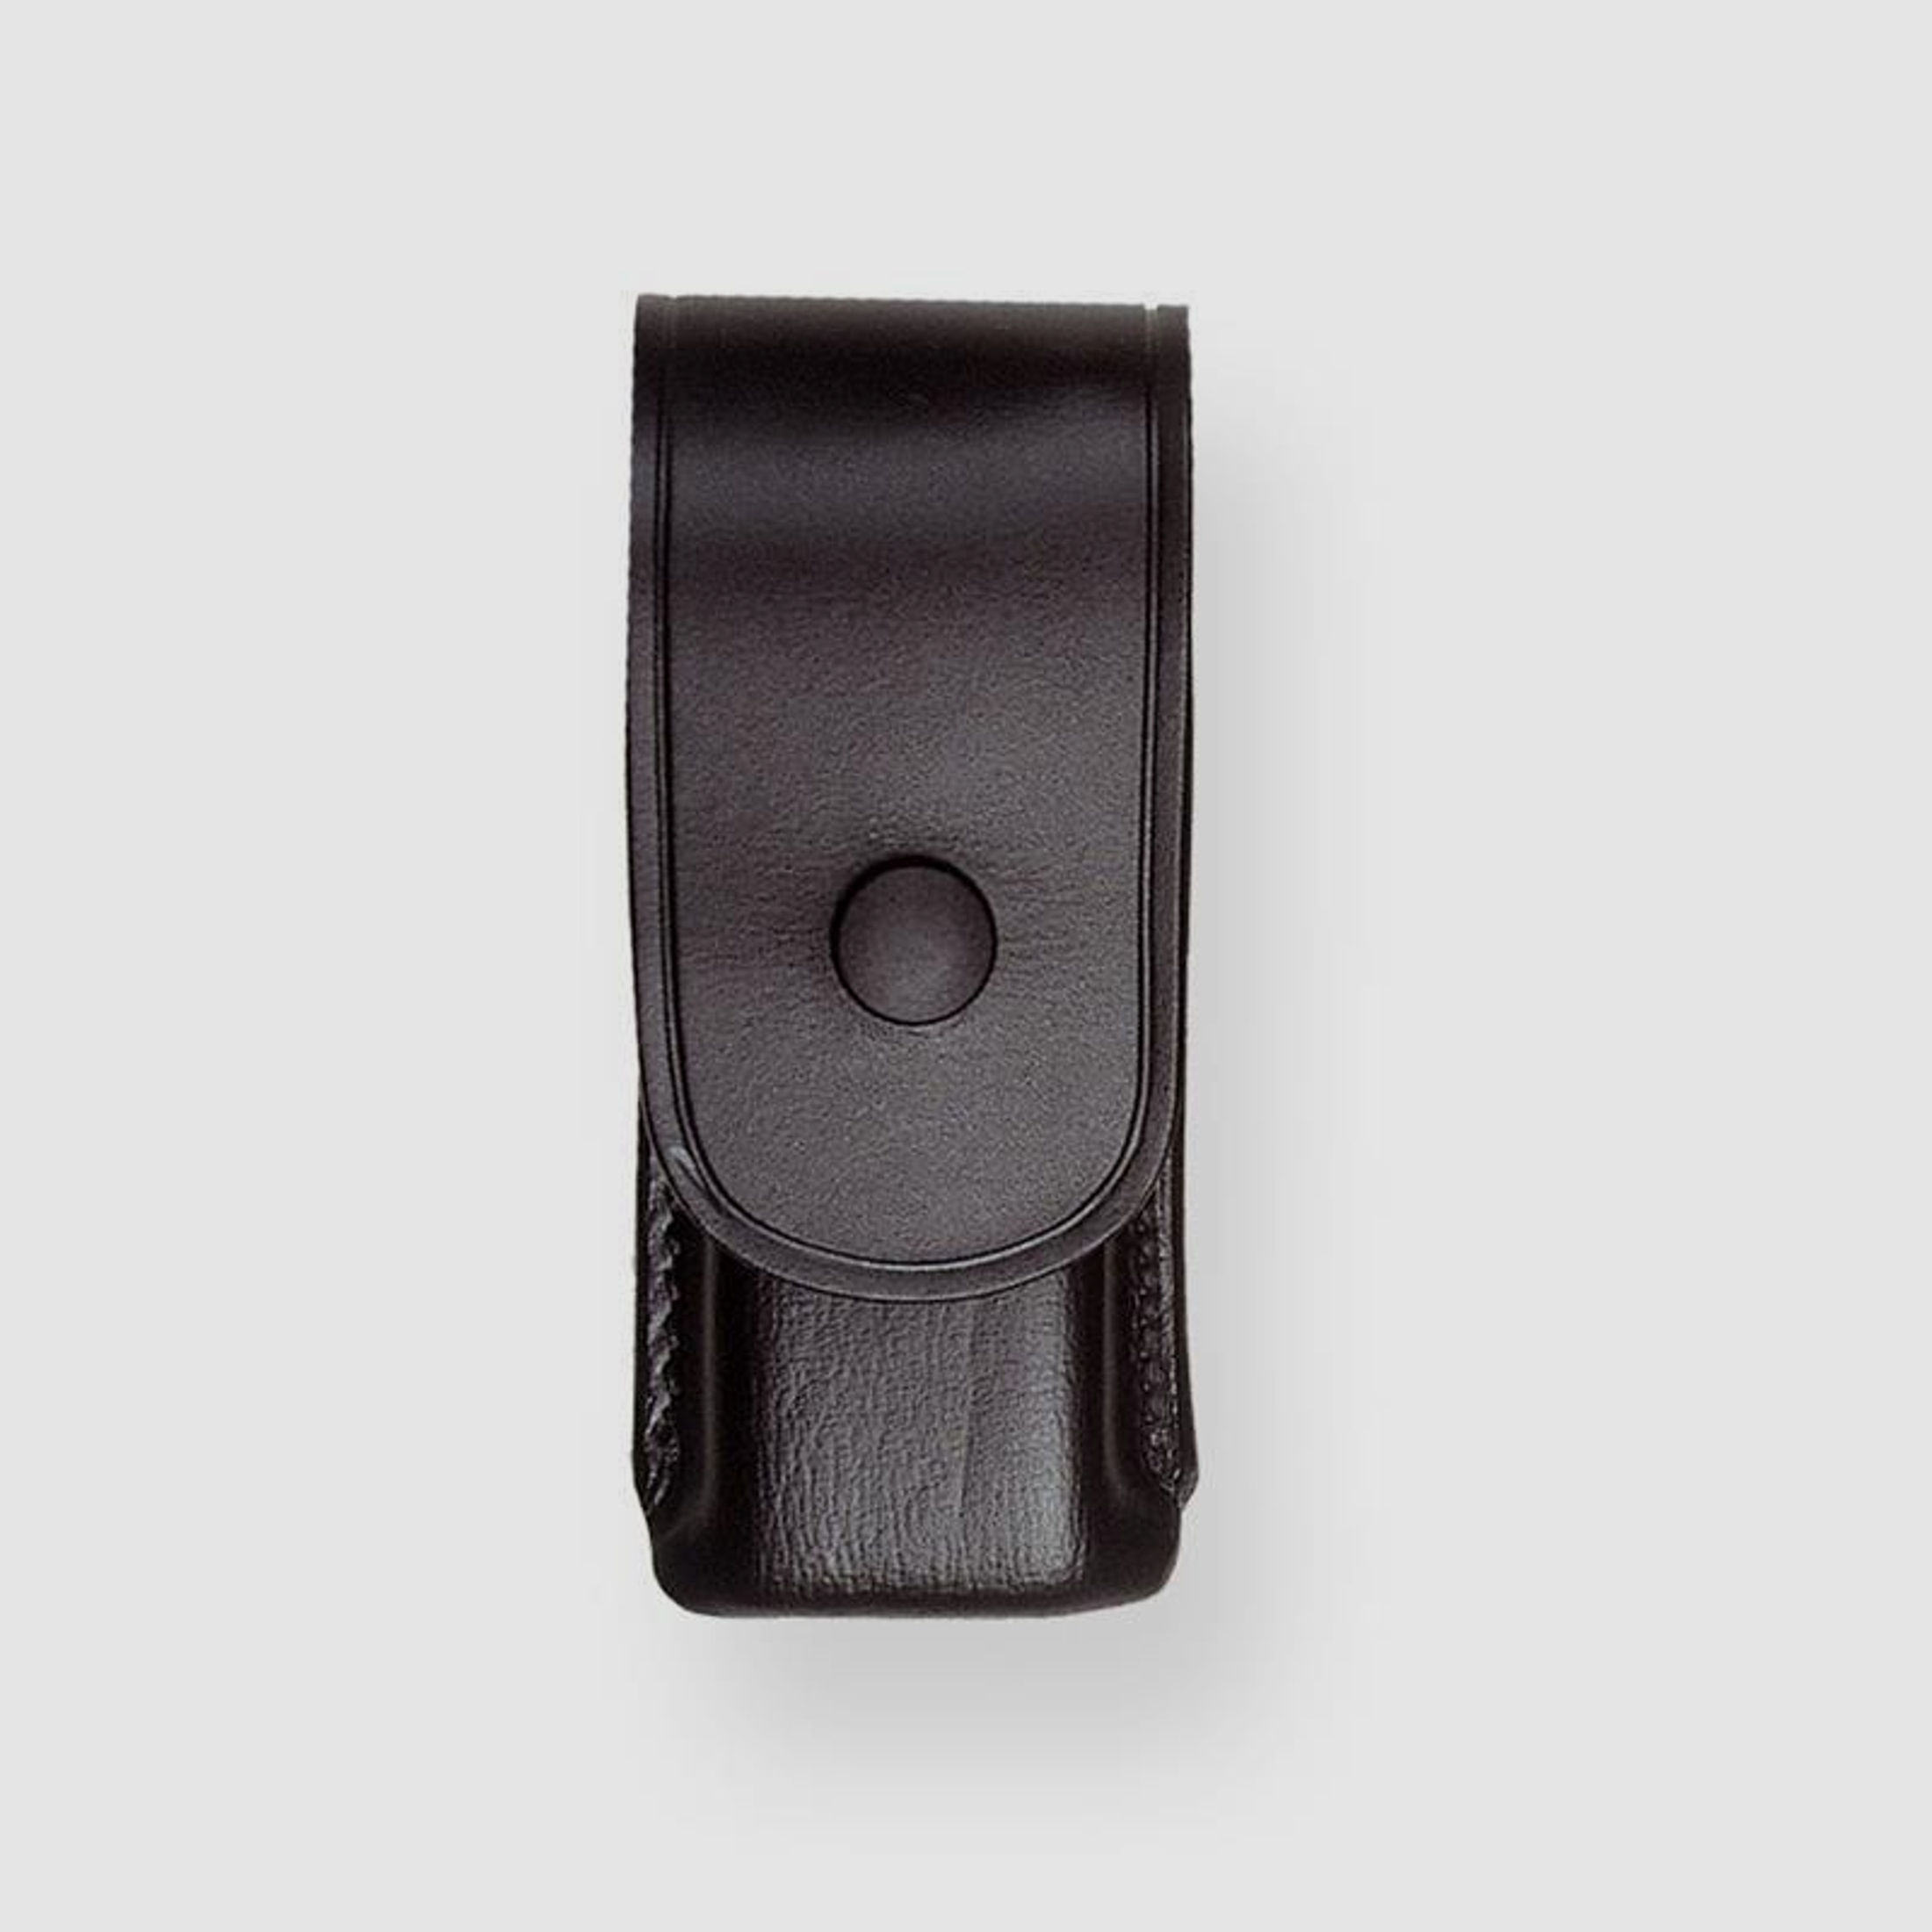 Sickinger MAGAZIN BOX  für Ersatzmagazin 40/45 zweireihig,Glock 20/21, Para Ordn. USP 45 (26x36mm) Braun